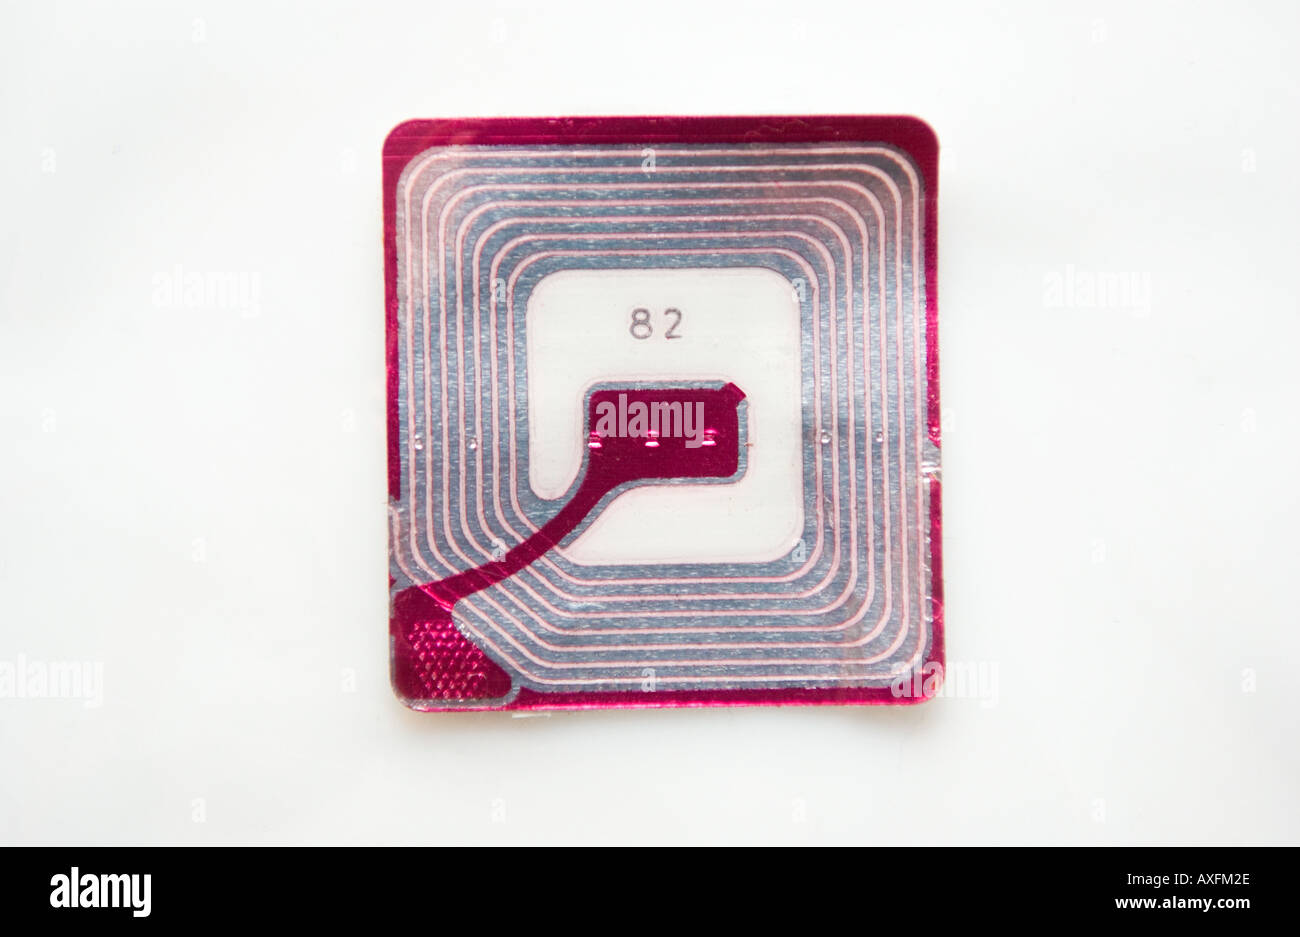 RFID Chip ,(Radio Frequency Identification) Chip wie auf der Verpackung  gefunden Stockfotografie - Alamy